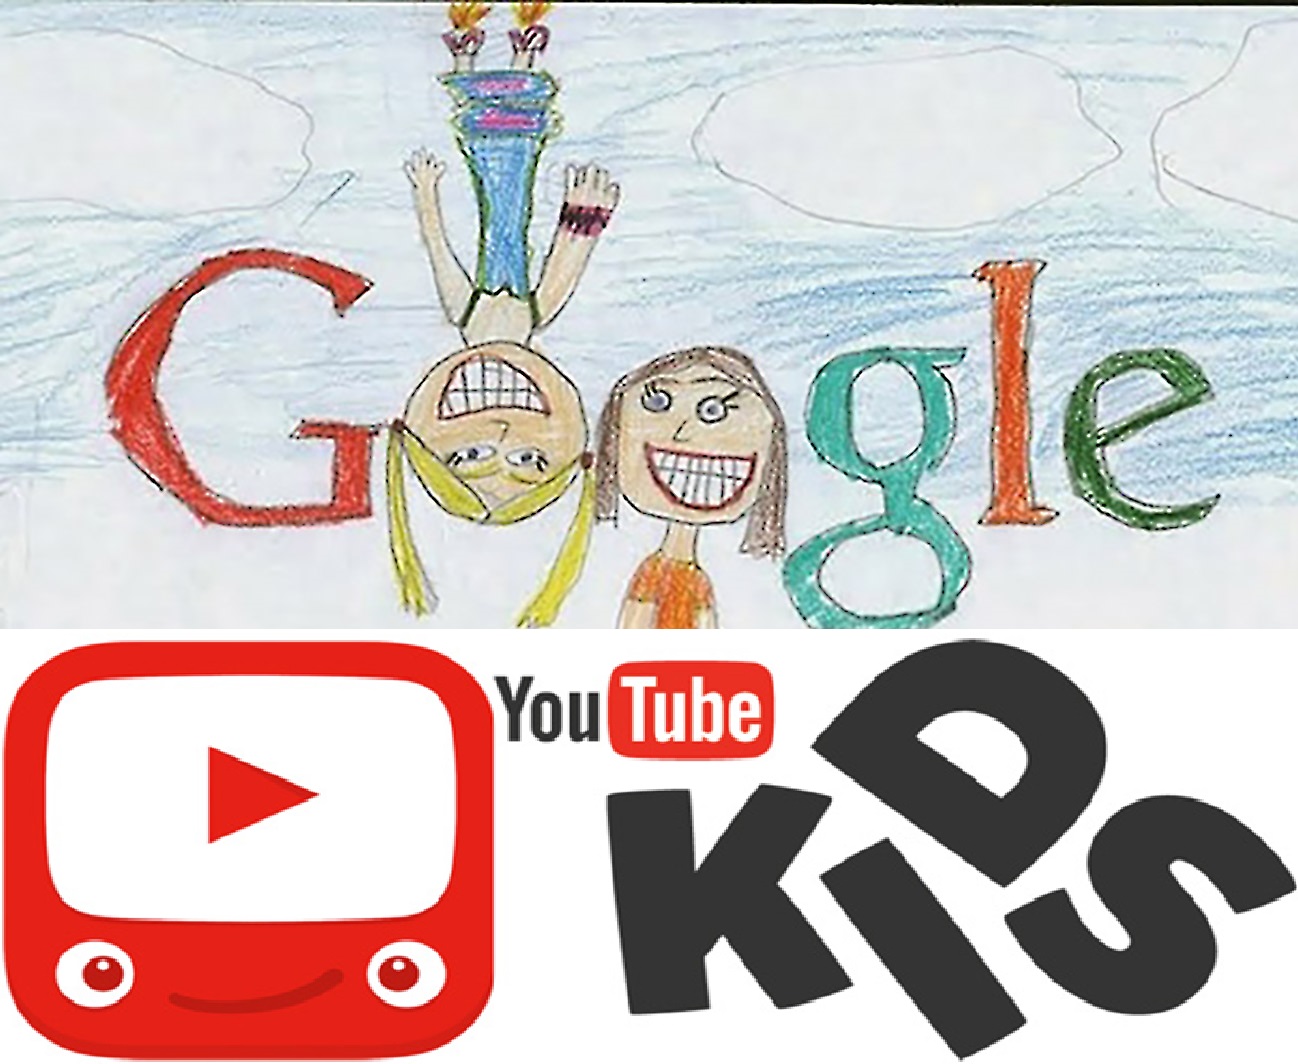 طريقة آمنة ليتصفّح أبنائكم "غوغل" و"يوتيوب"